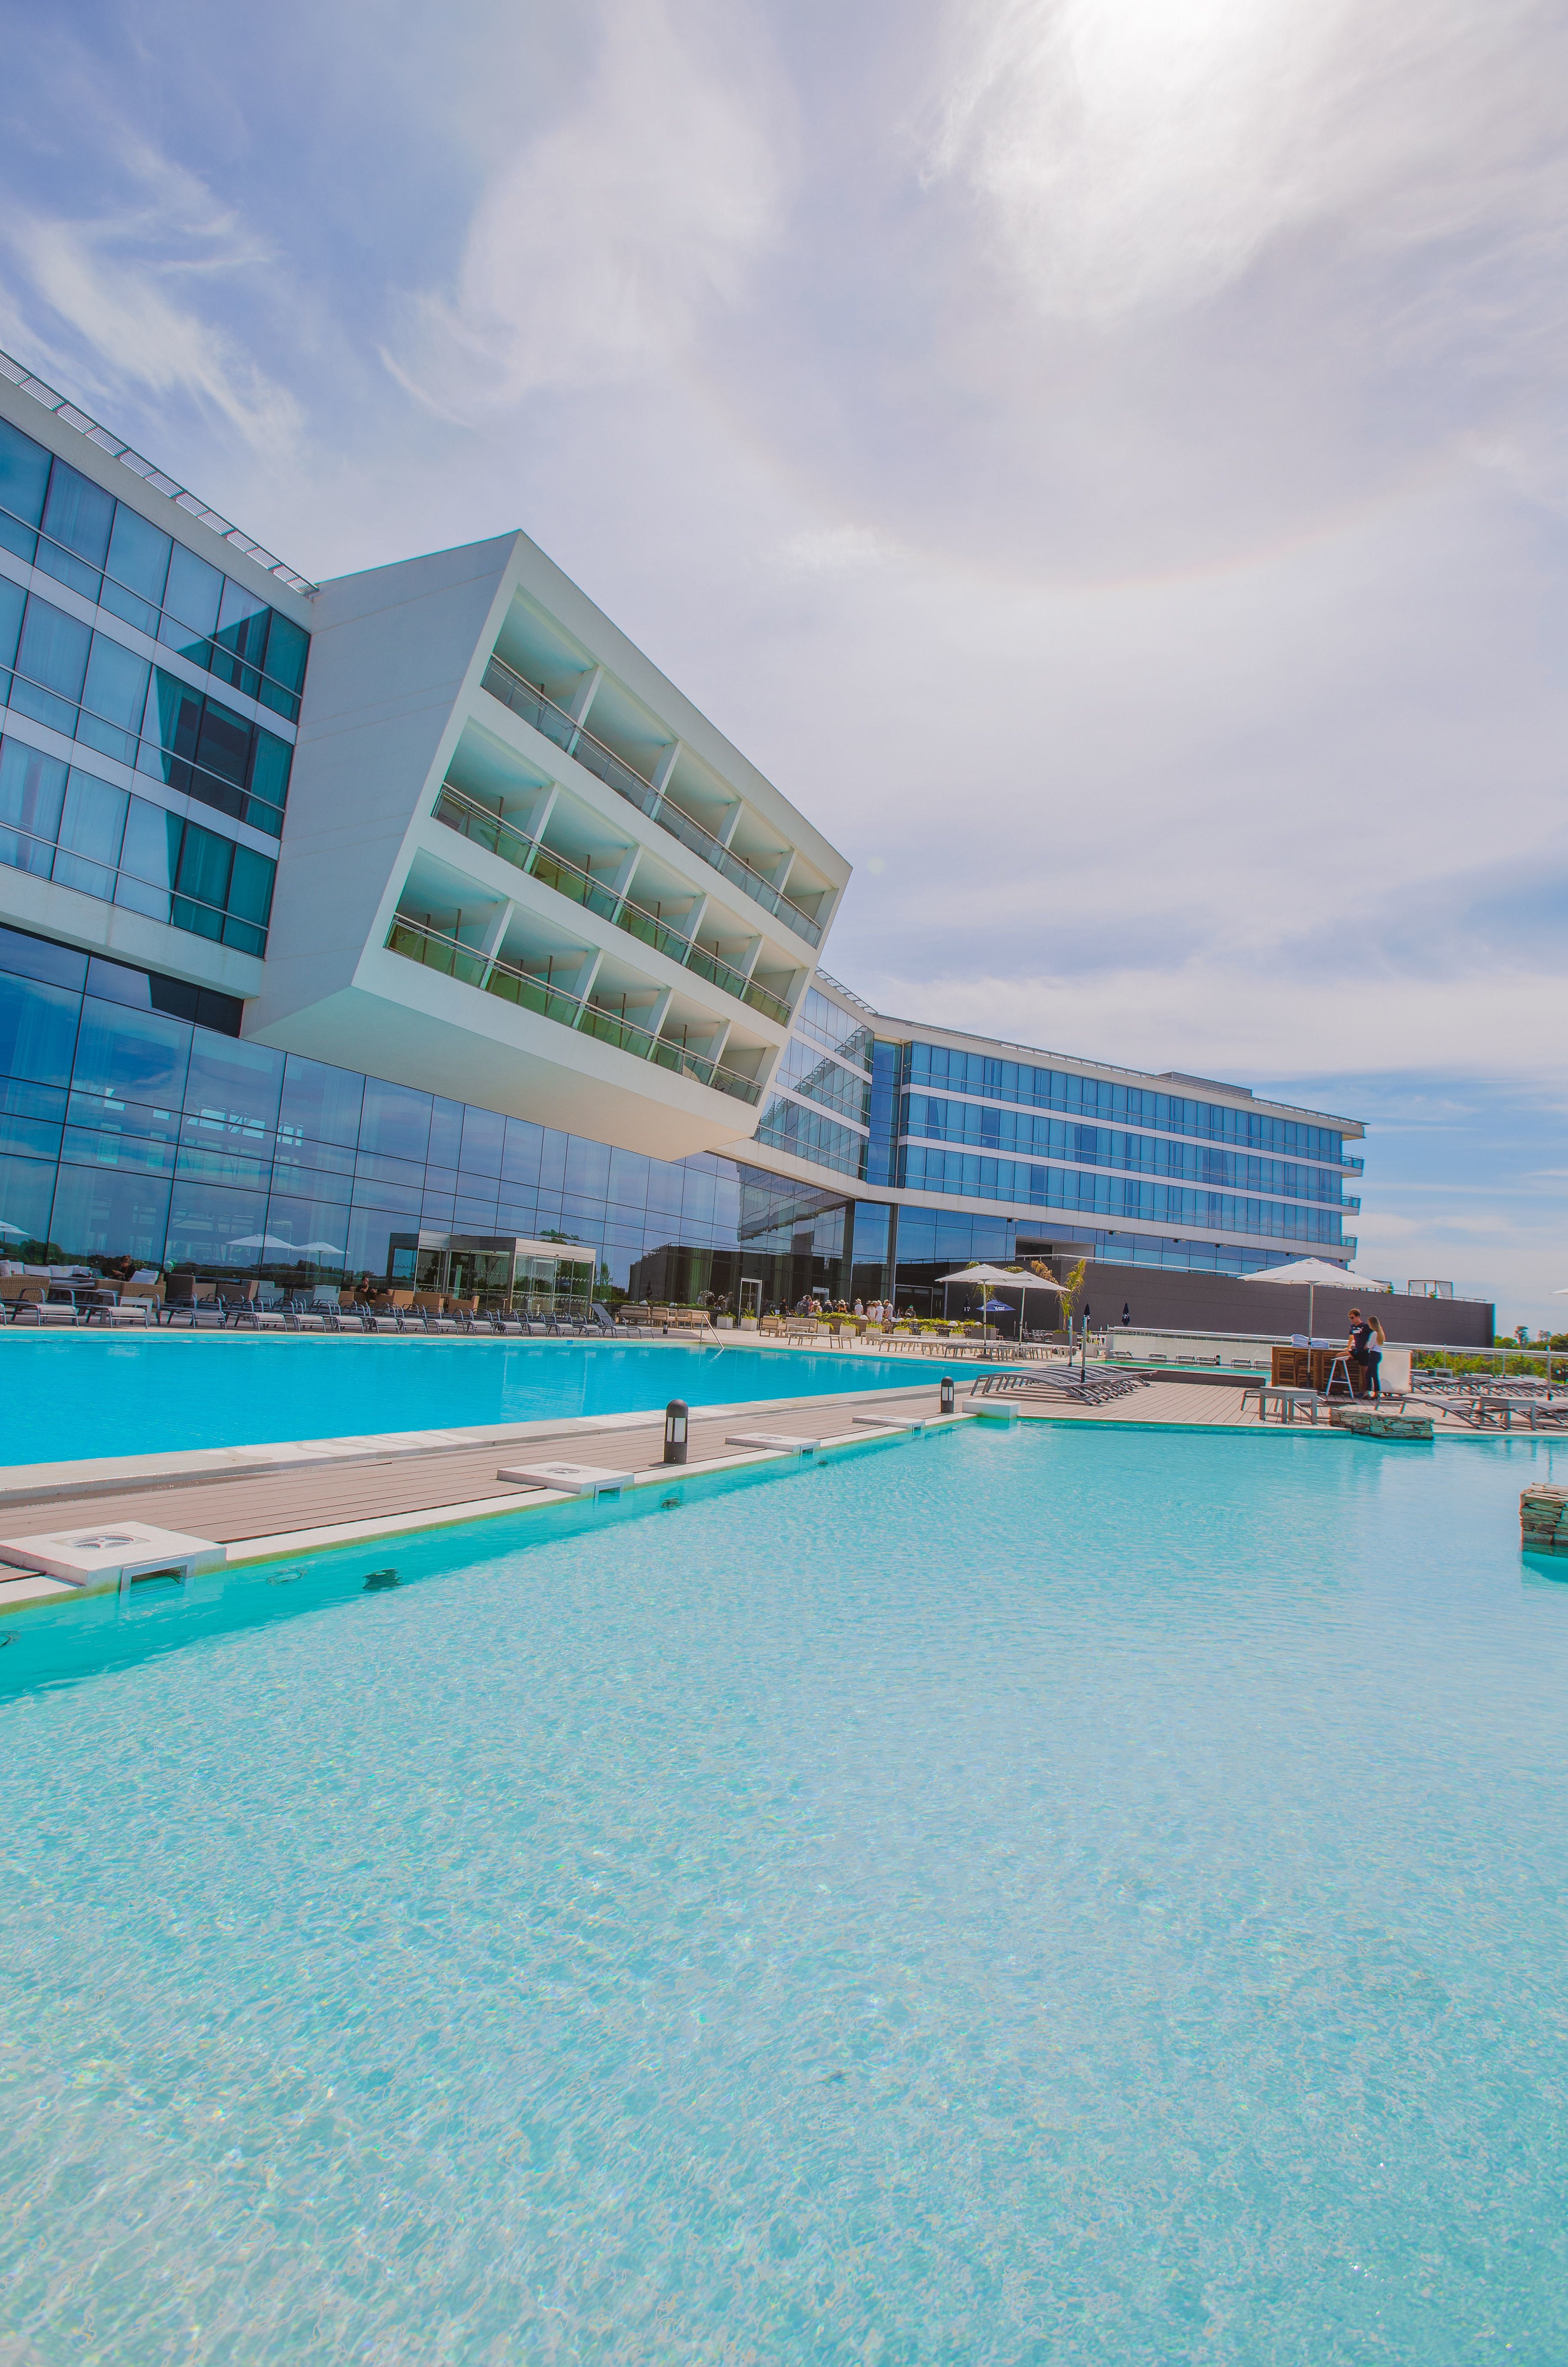 Vista de la fachada del hotel y del área de la piscina al aire libre